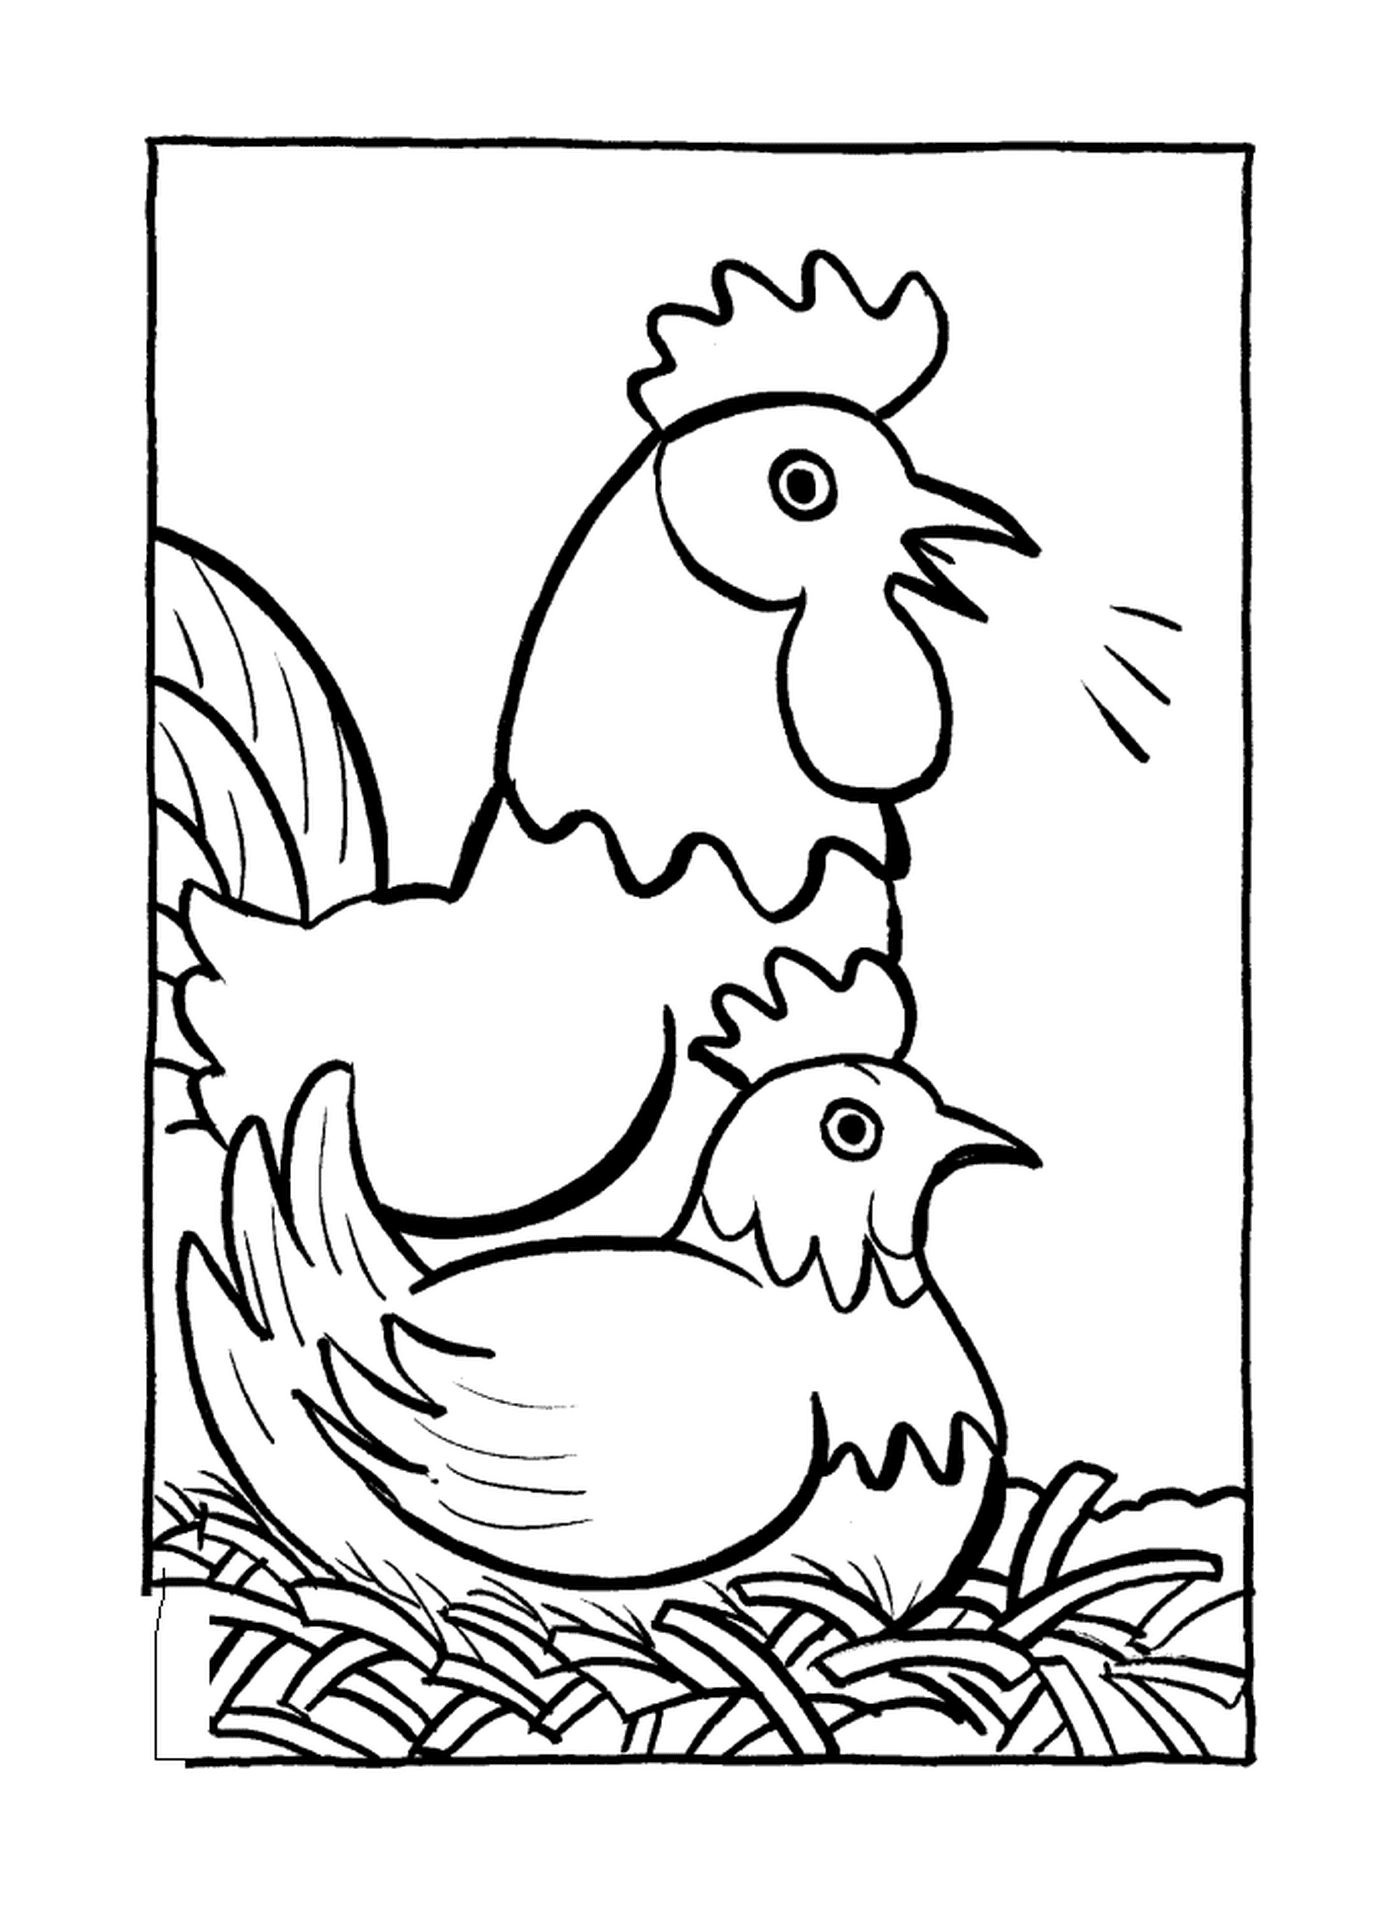  اثنان من الدجاجان 